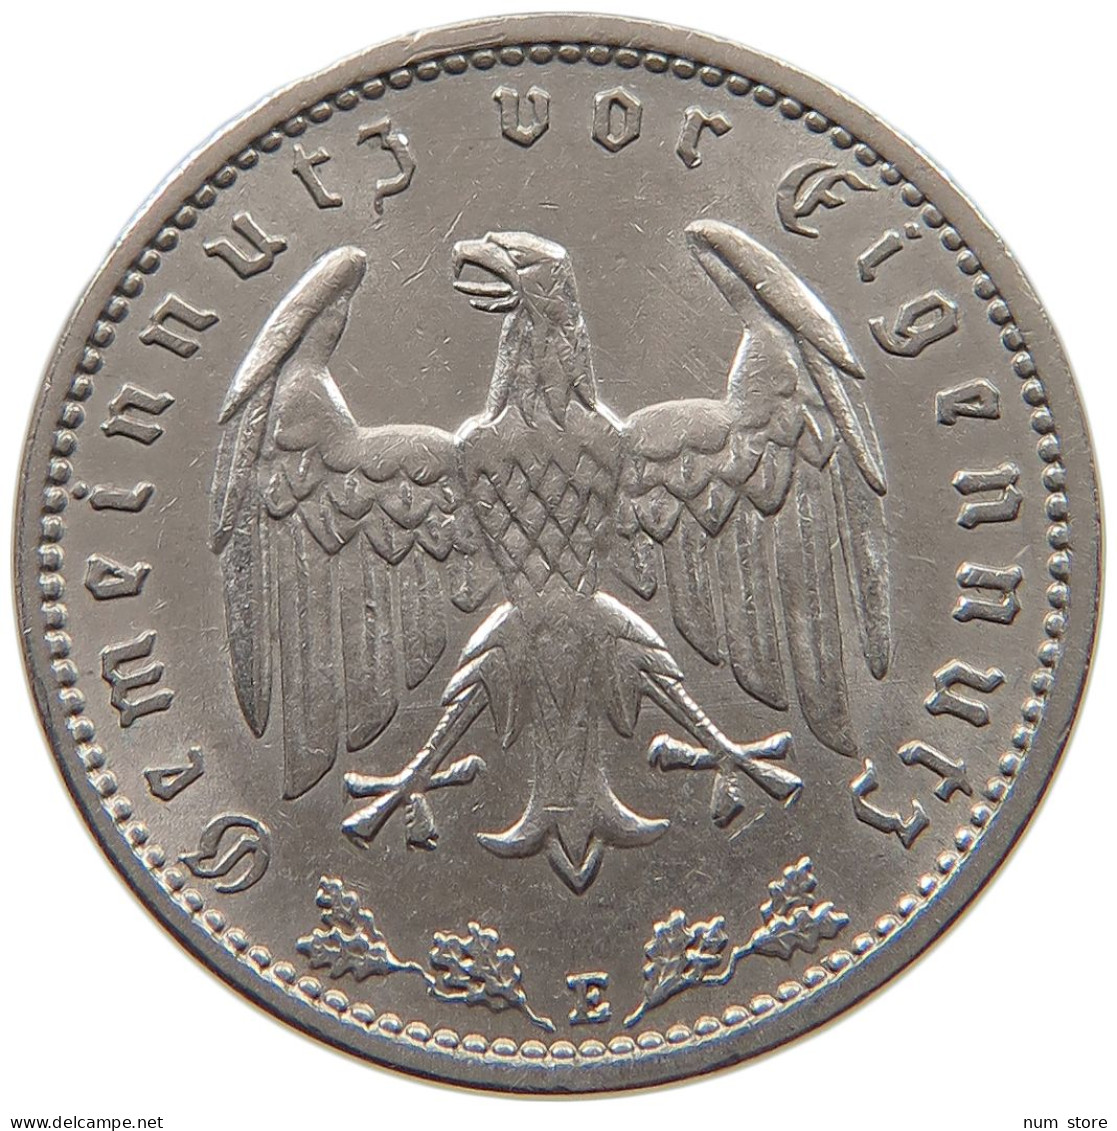 DRITTES REICH MARK 1934 E J.354 #a046 0161 - 1 Reichsmark